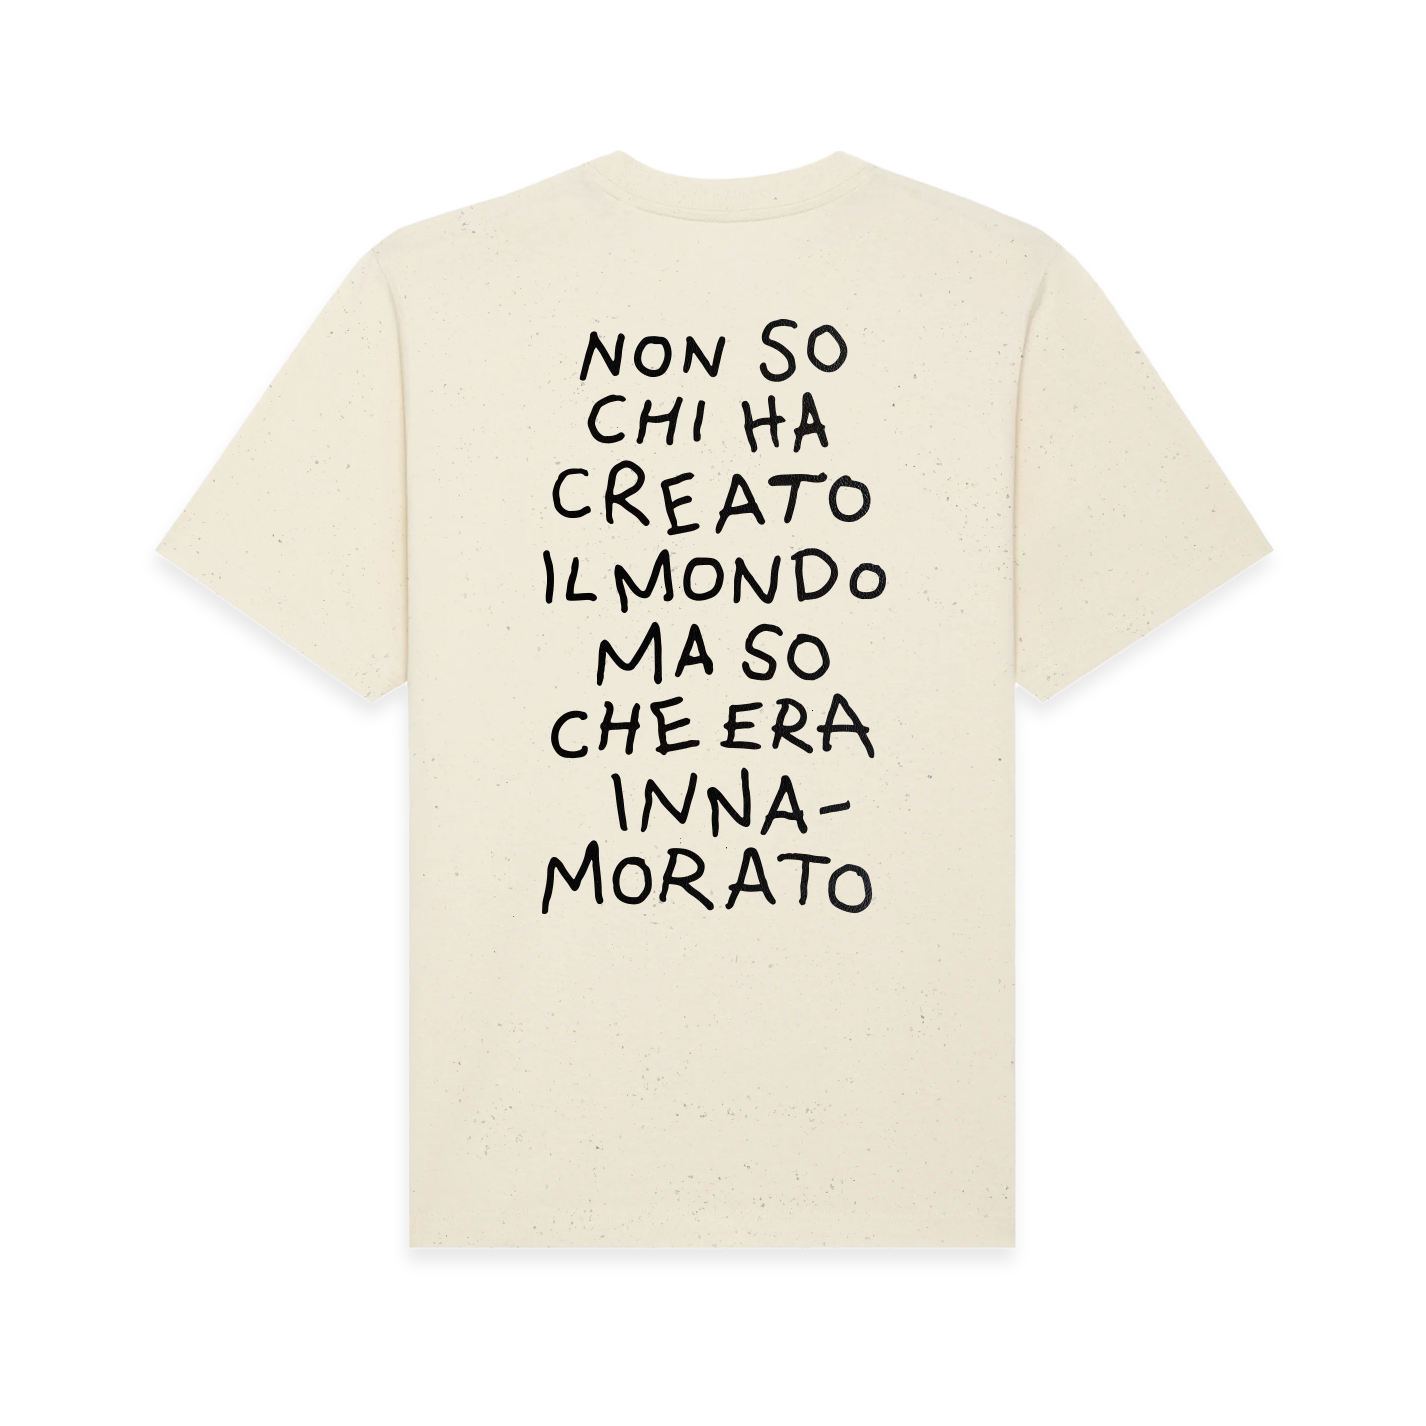 T-Shirt "Non so chi ha creato il mondo ma so che era innamorato" Natural